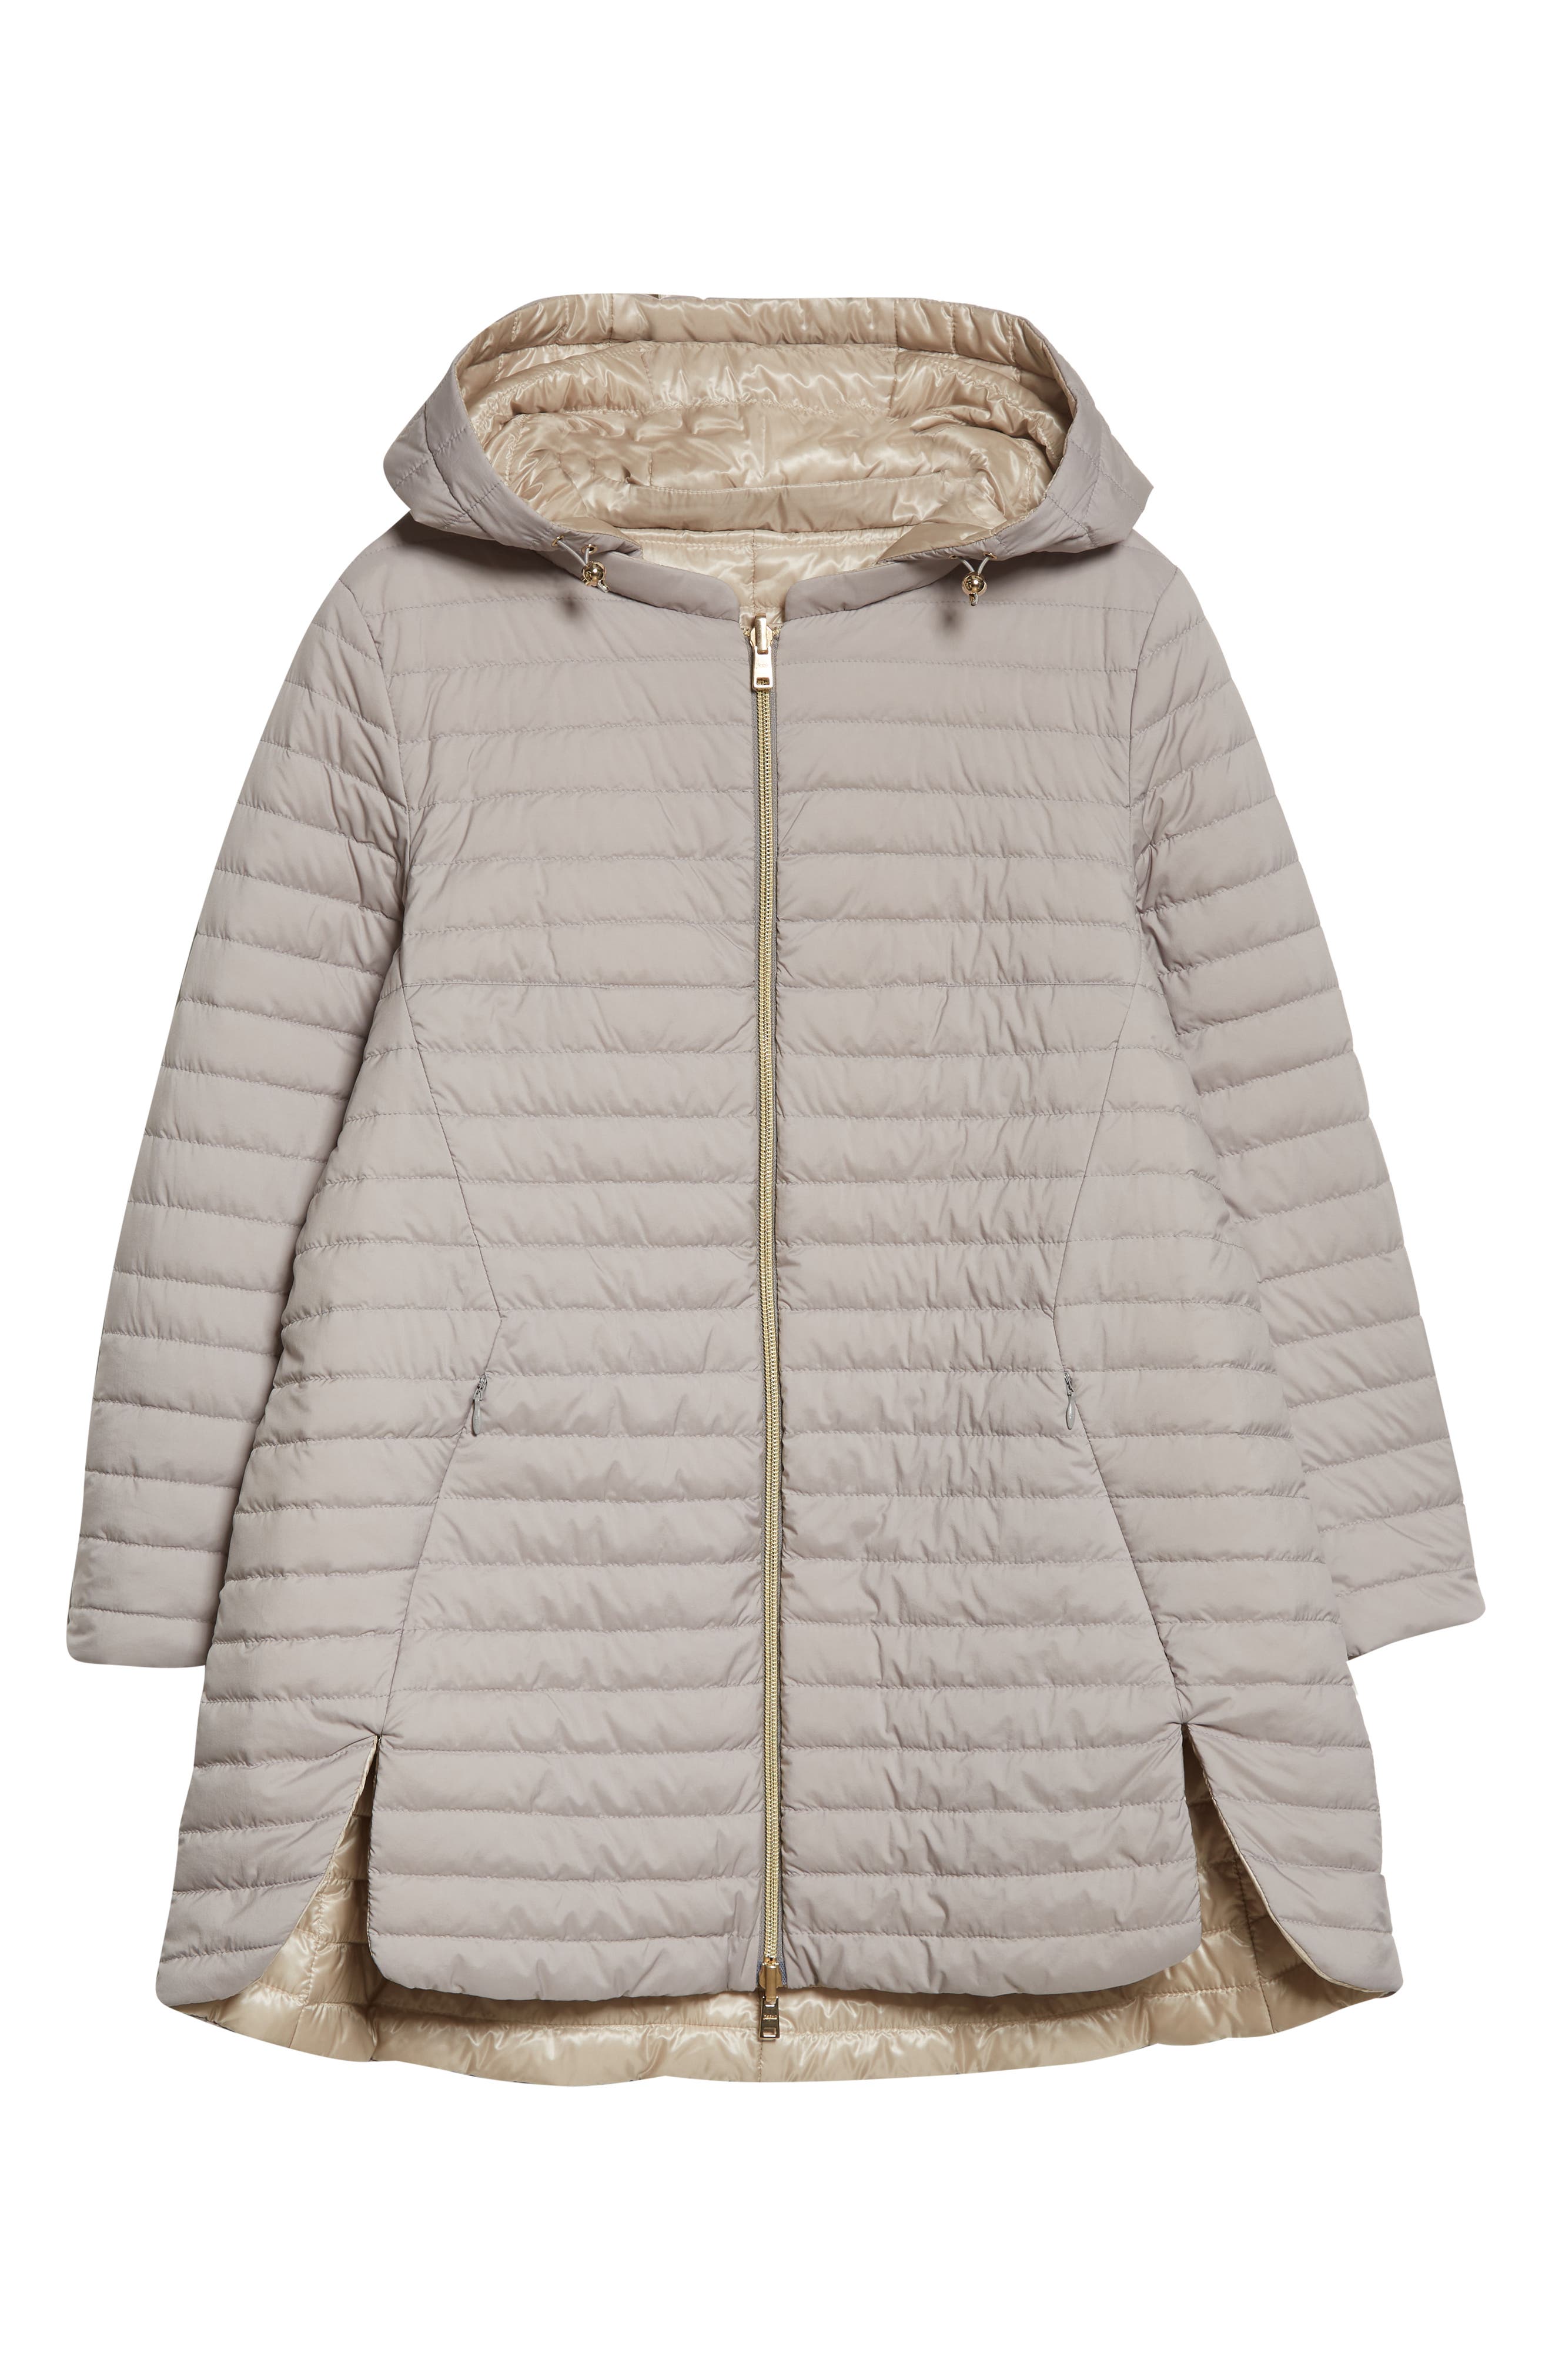 Vigoss Women's Matte Quilted Short Winter Puffer Coat with Pillow Collar